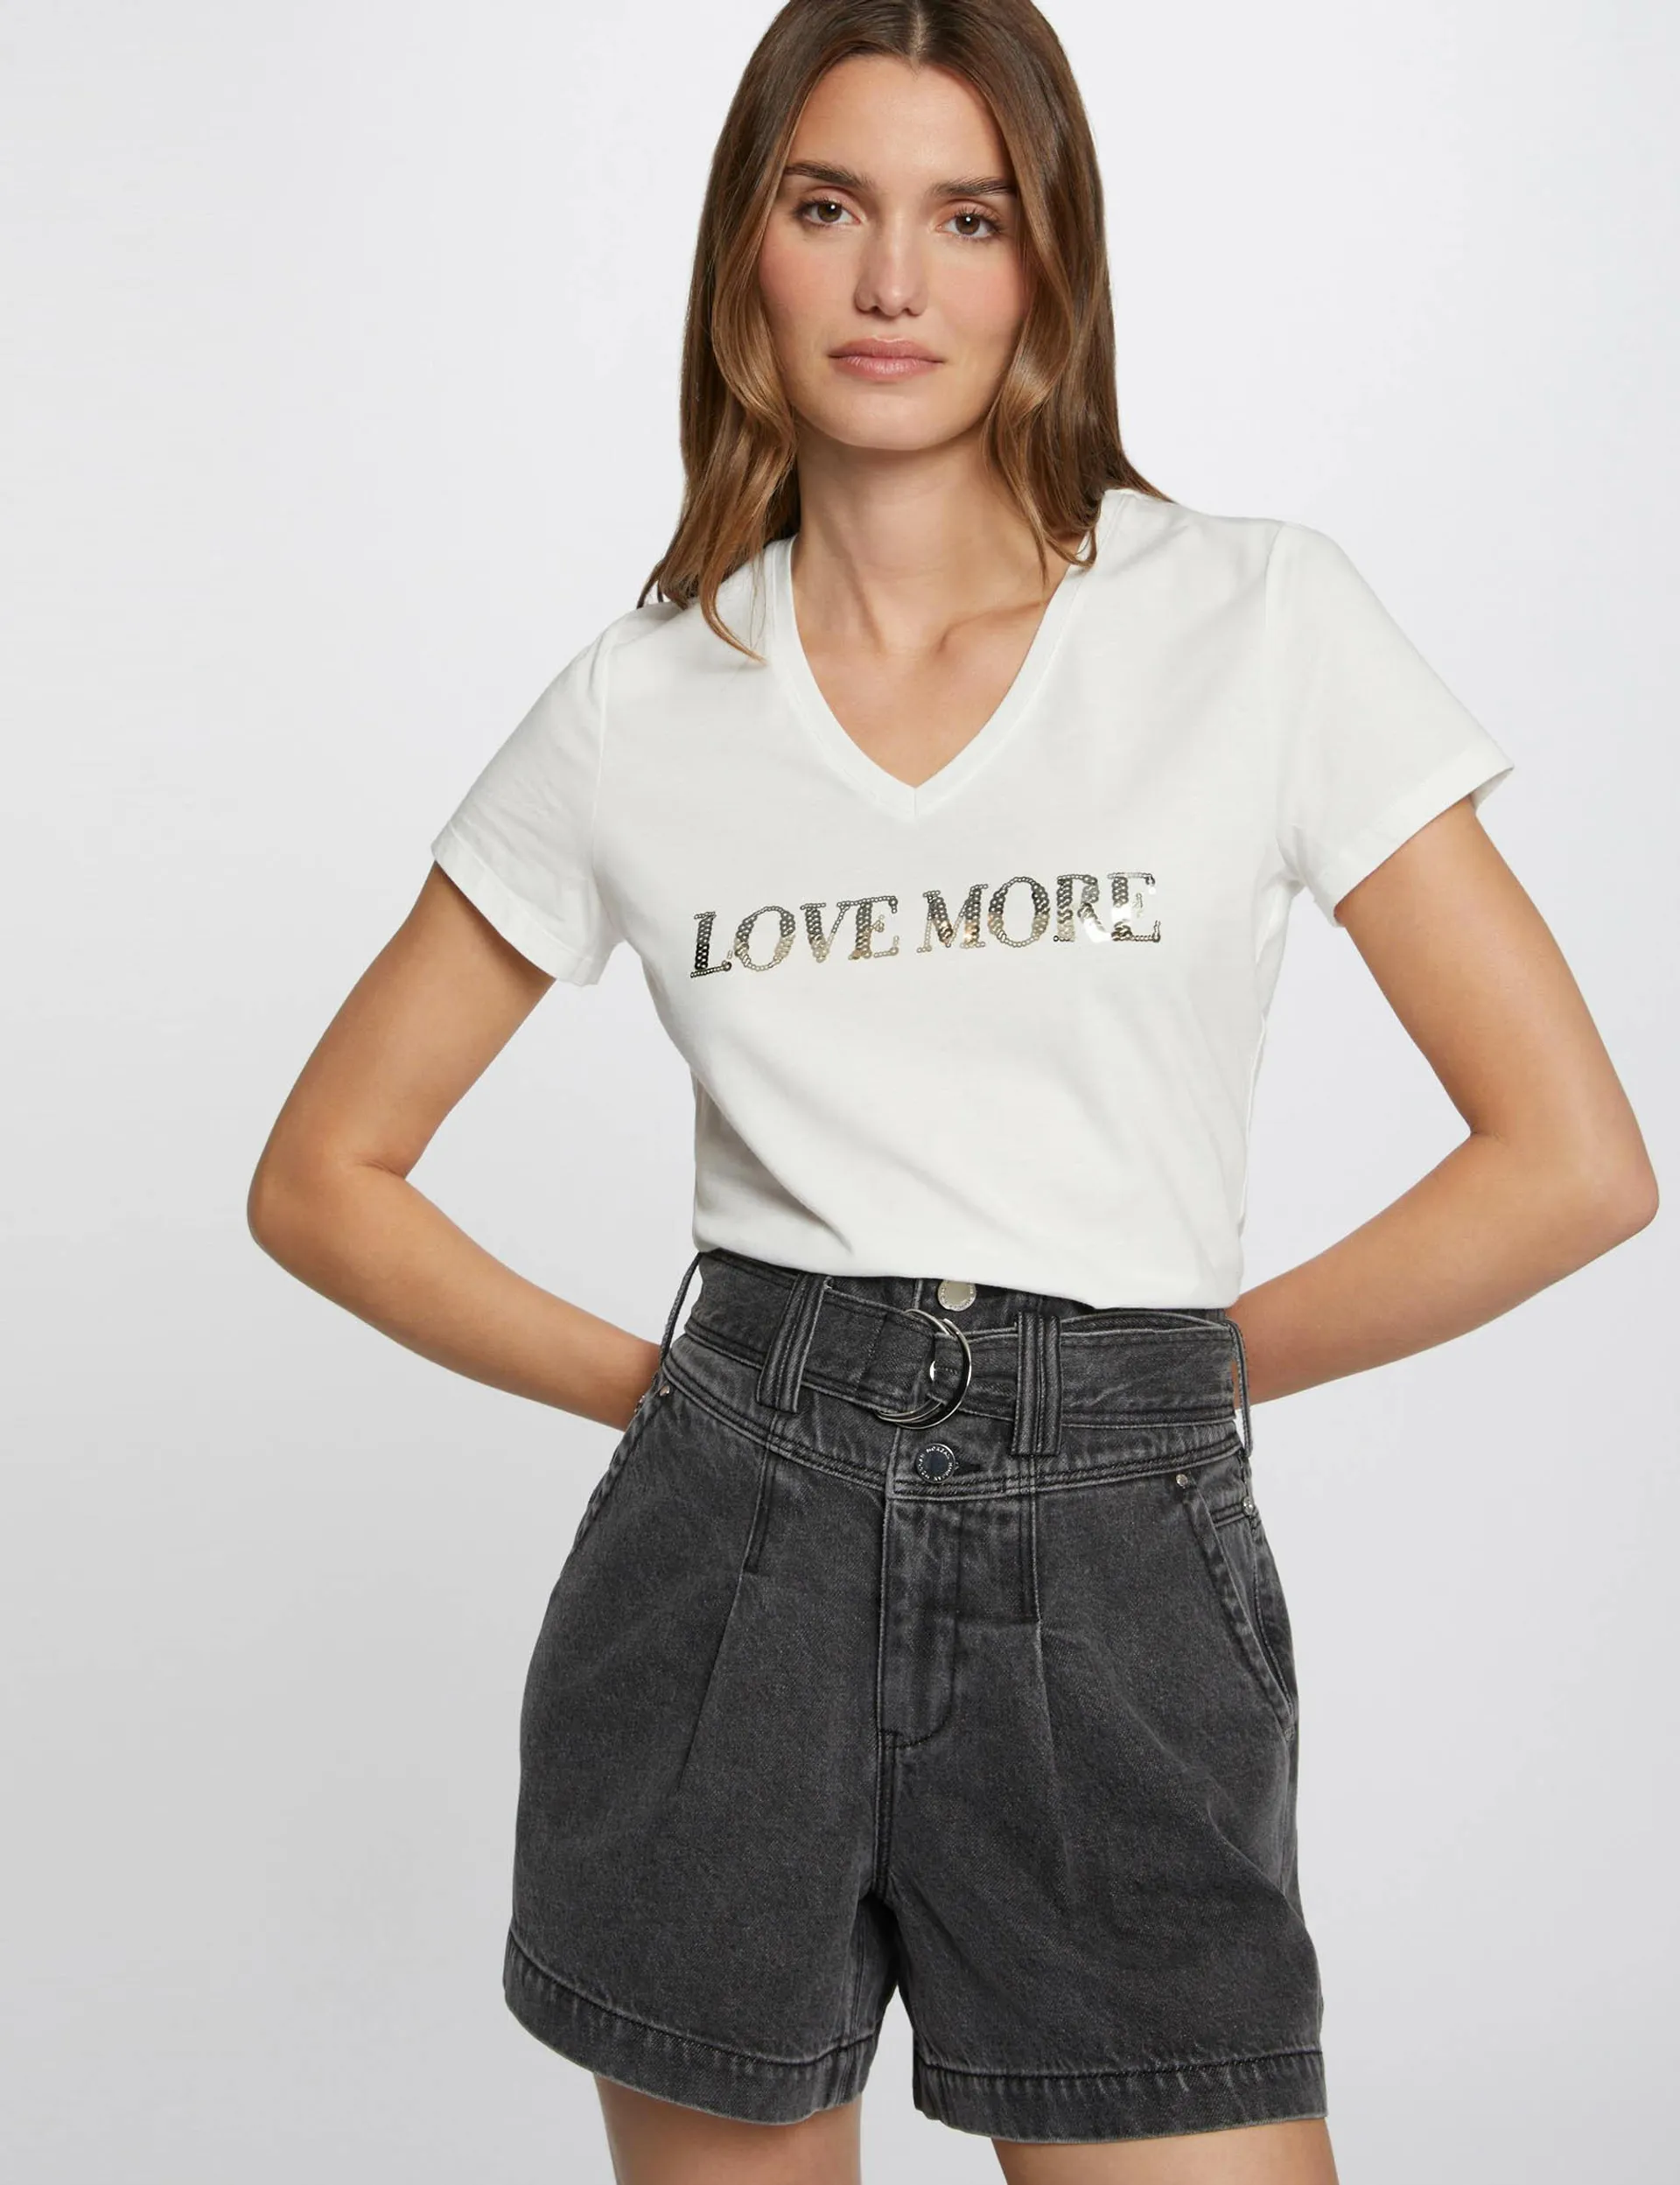 Camiseta mensaje y lentejuelas crudo mujer